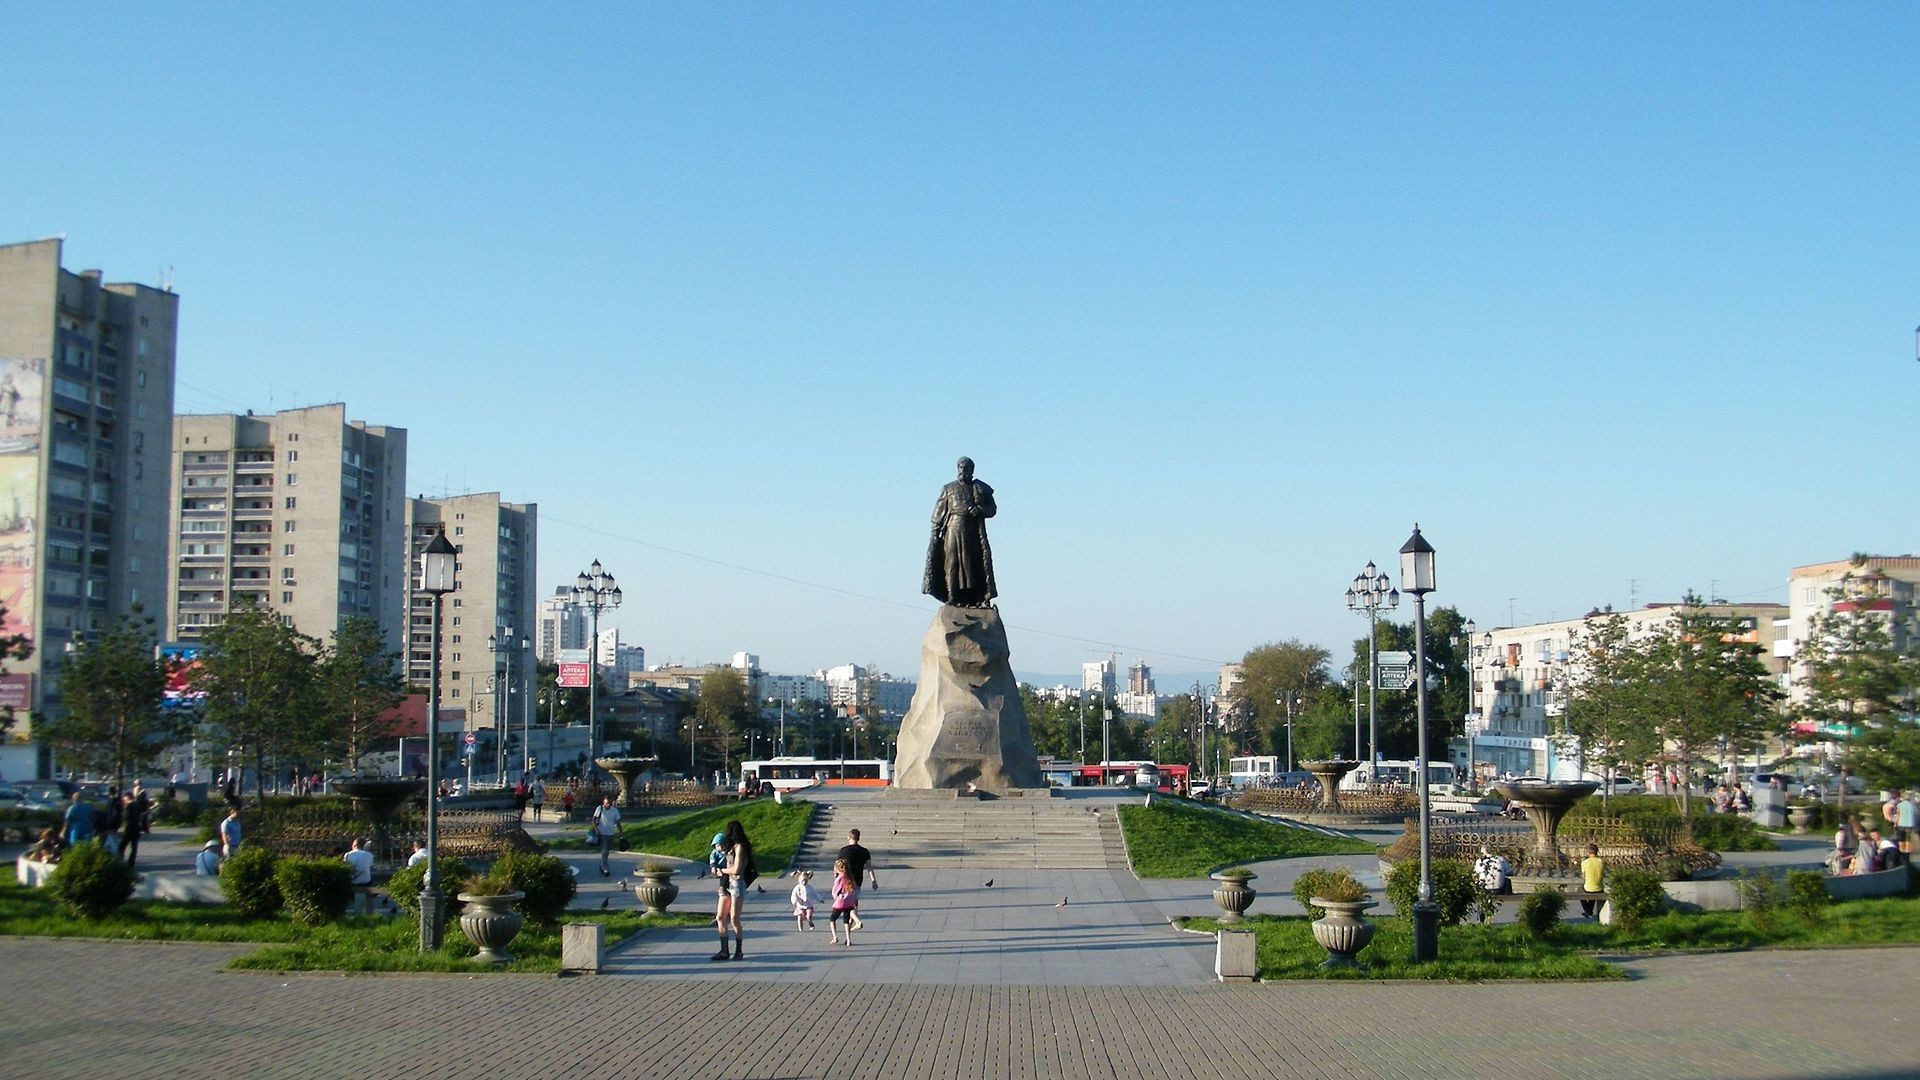 Habarovsk, trg s spomenikom Jerofeja Habarova, ruskega podjetnika in raziskovalca Daljnega vzhoda